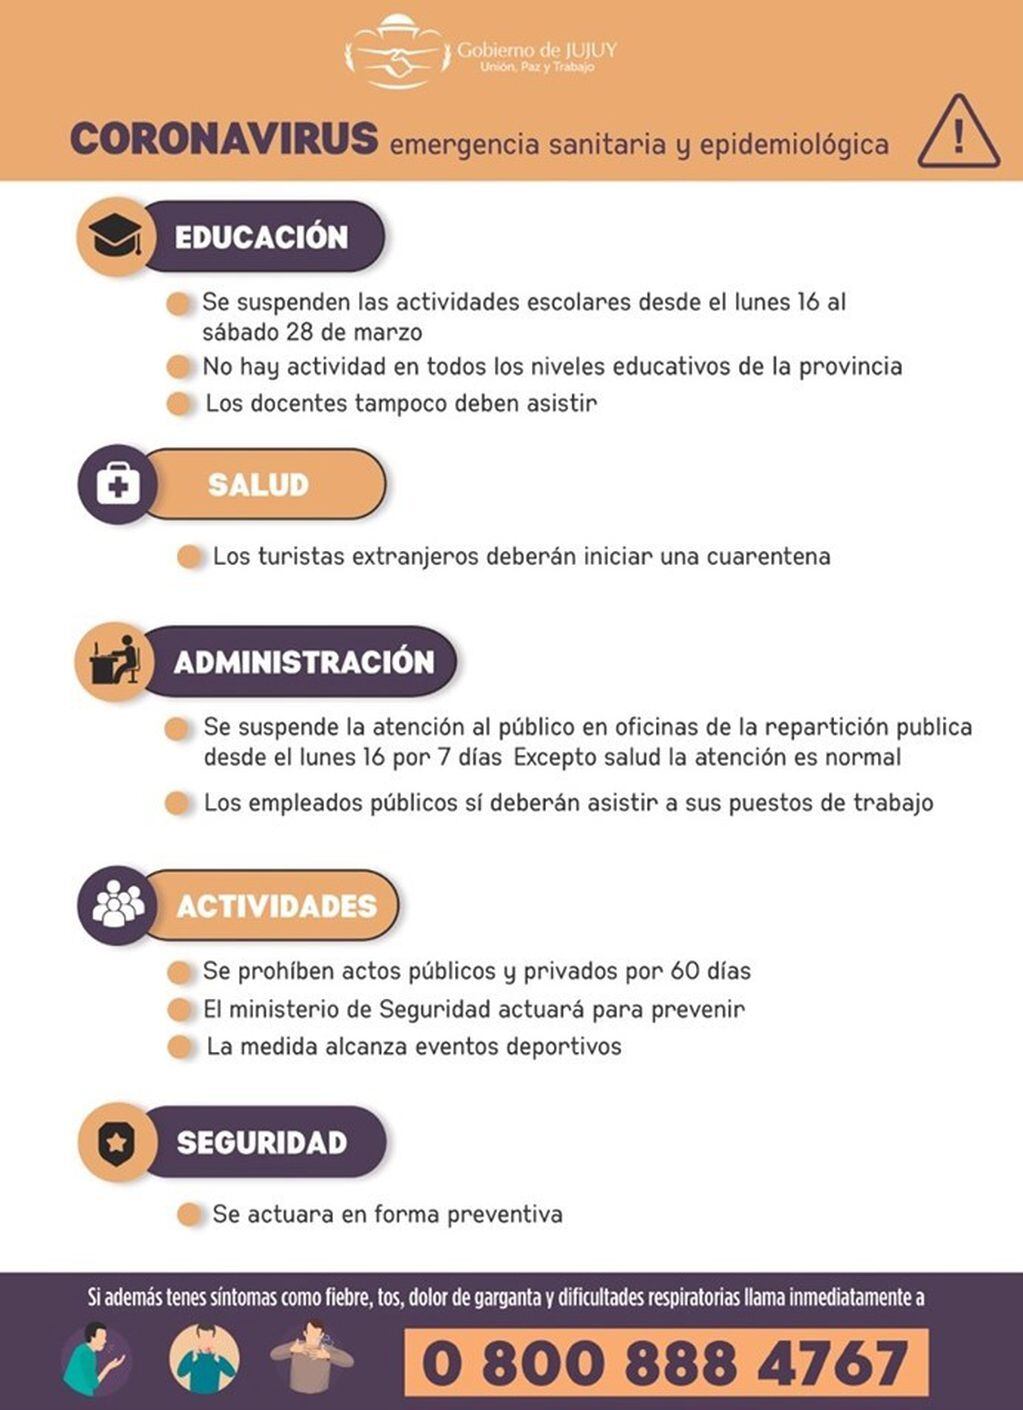 Las medidas adoptadas en Jujuy para prevenir el coronavirus COVID-19.